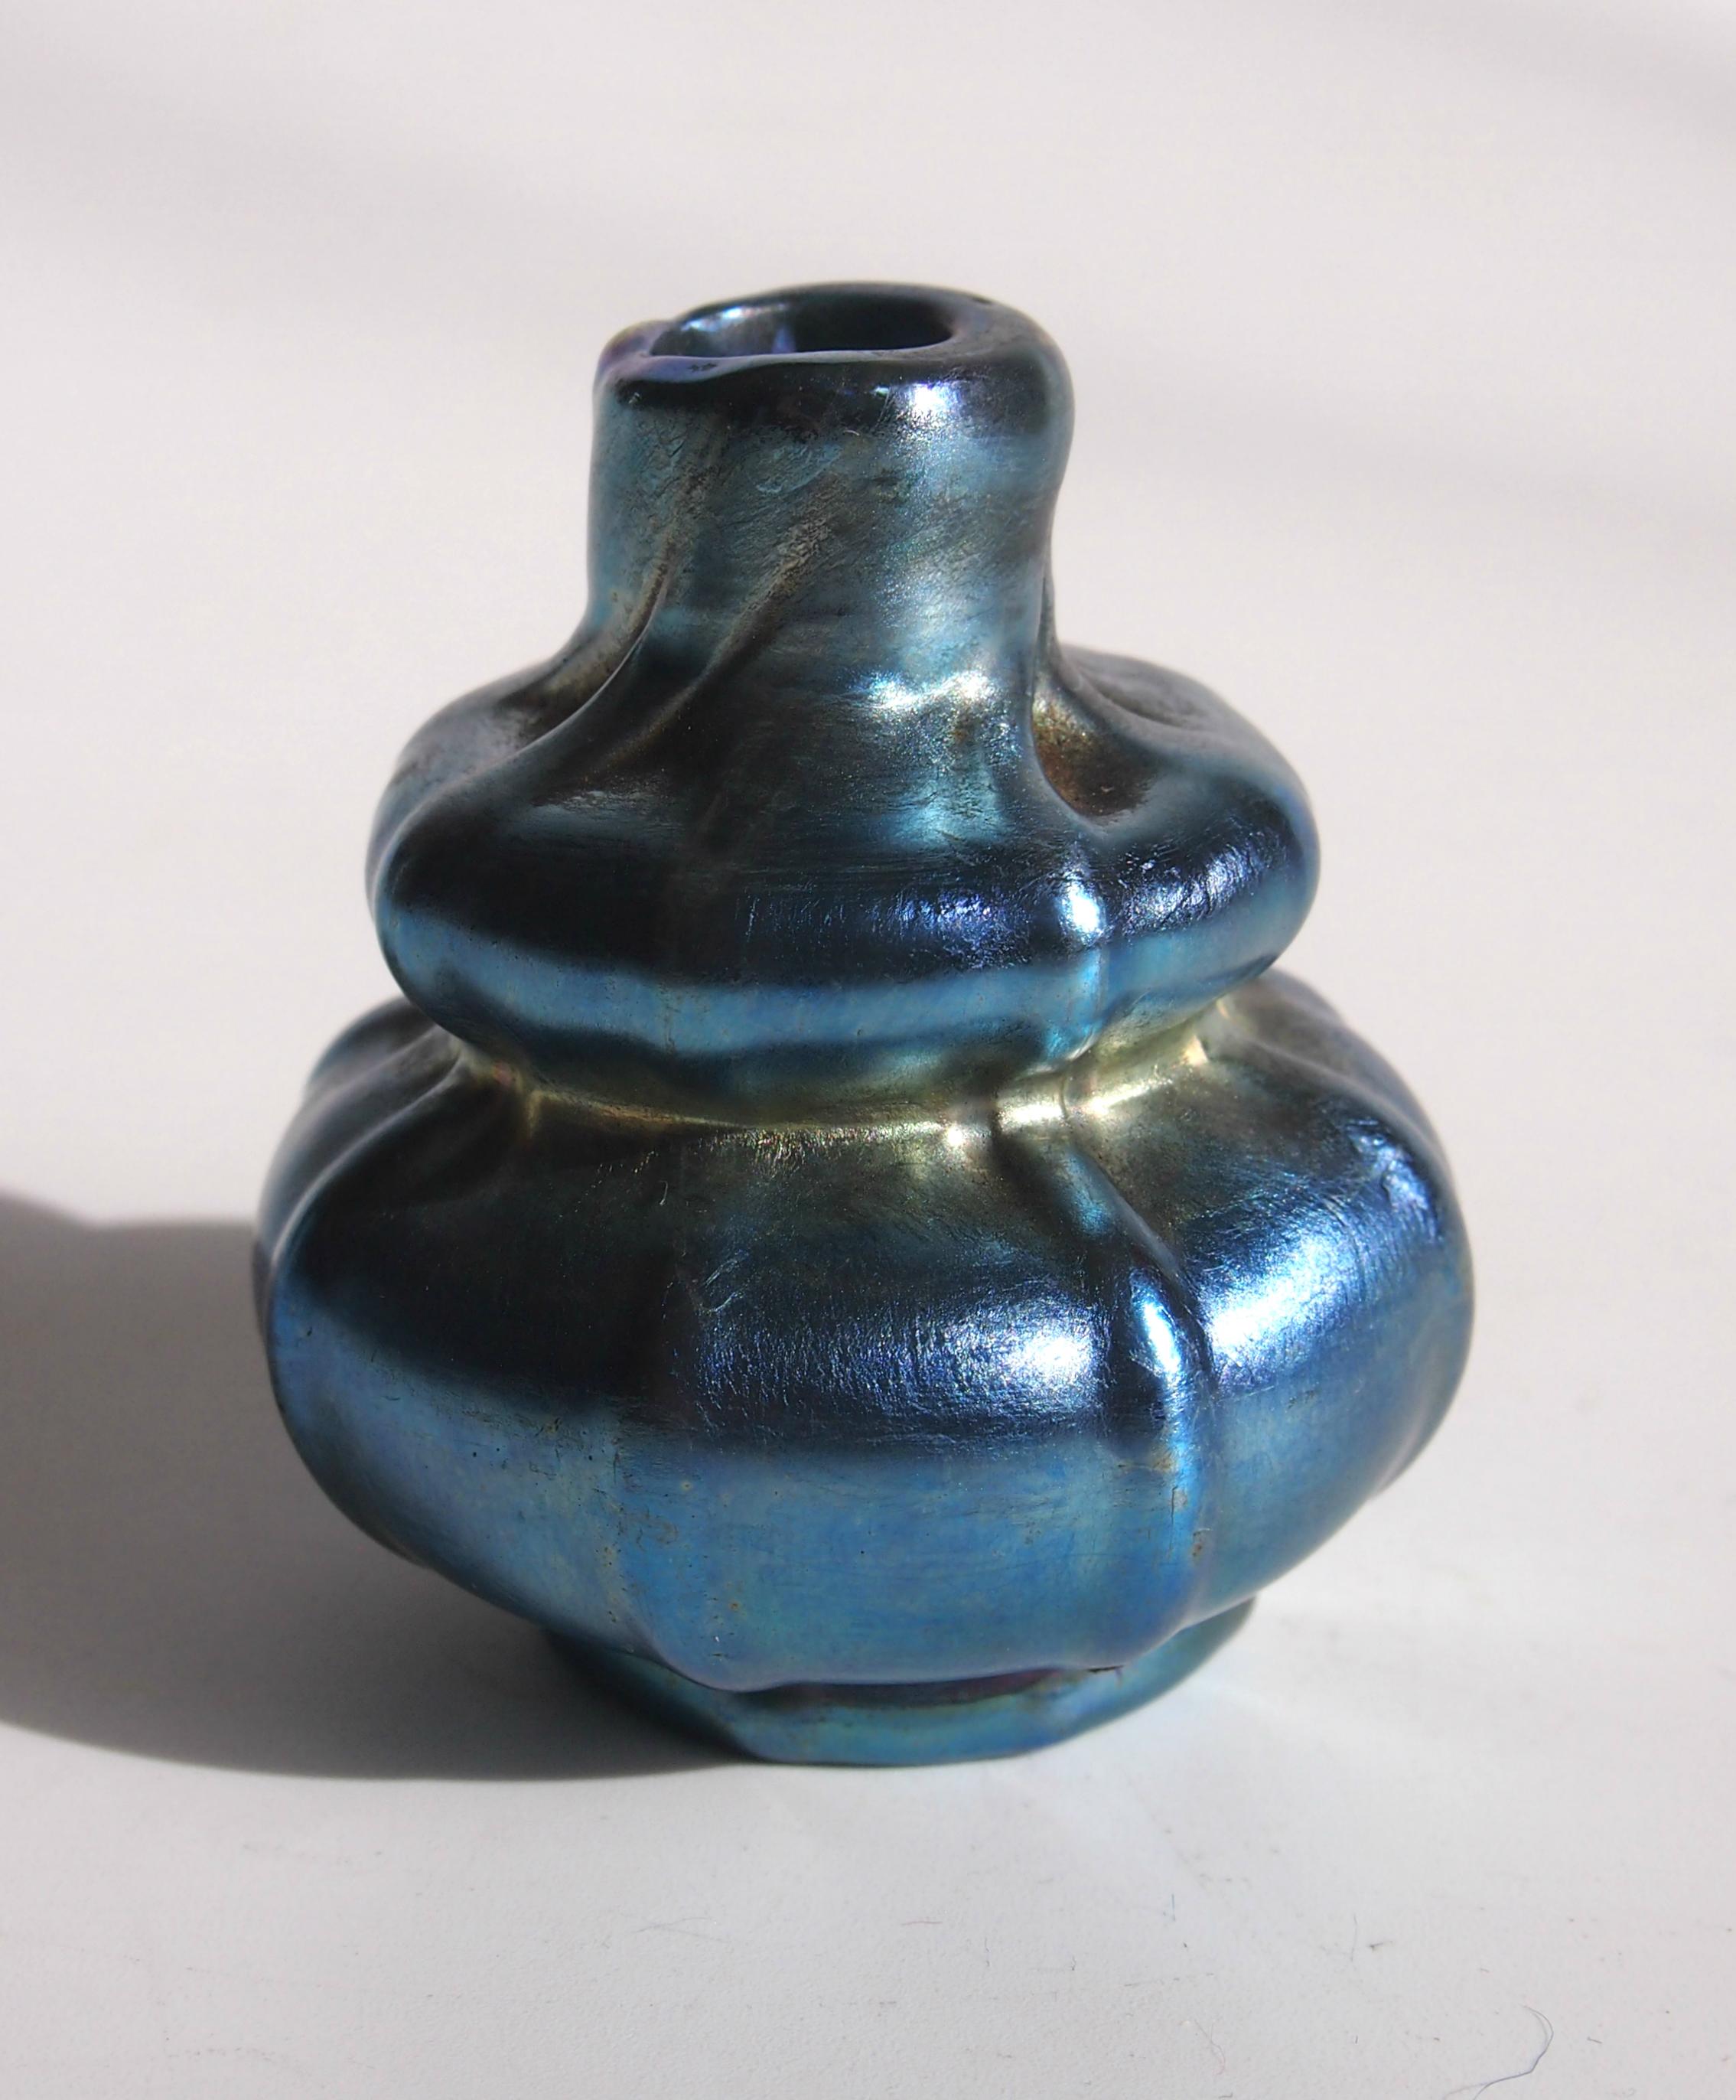 Très rare vase miniature en Favrile bleu Louis Comfort Tiffany à nervures organiques dans le style Jugendstil. Magnifiquement signé 'L. C. Tiffany Inc Favrile' puis (indistinctement) '7168 U' et un code de forme très indistinct '10/??' (Voir photo